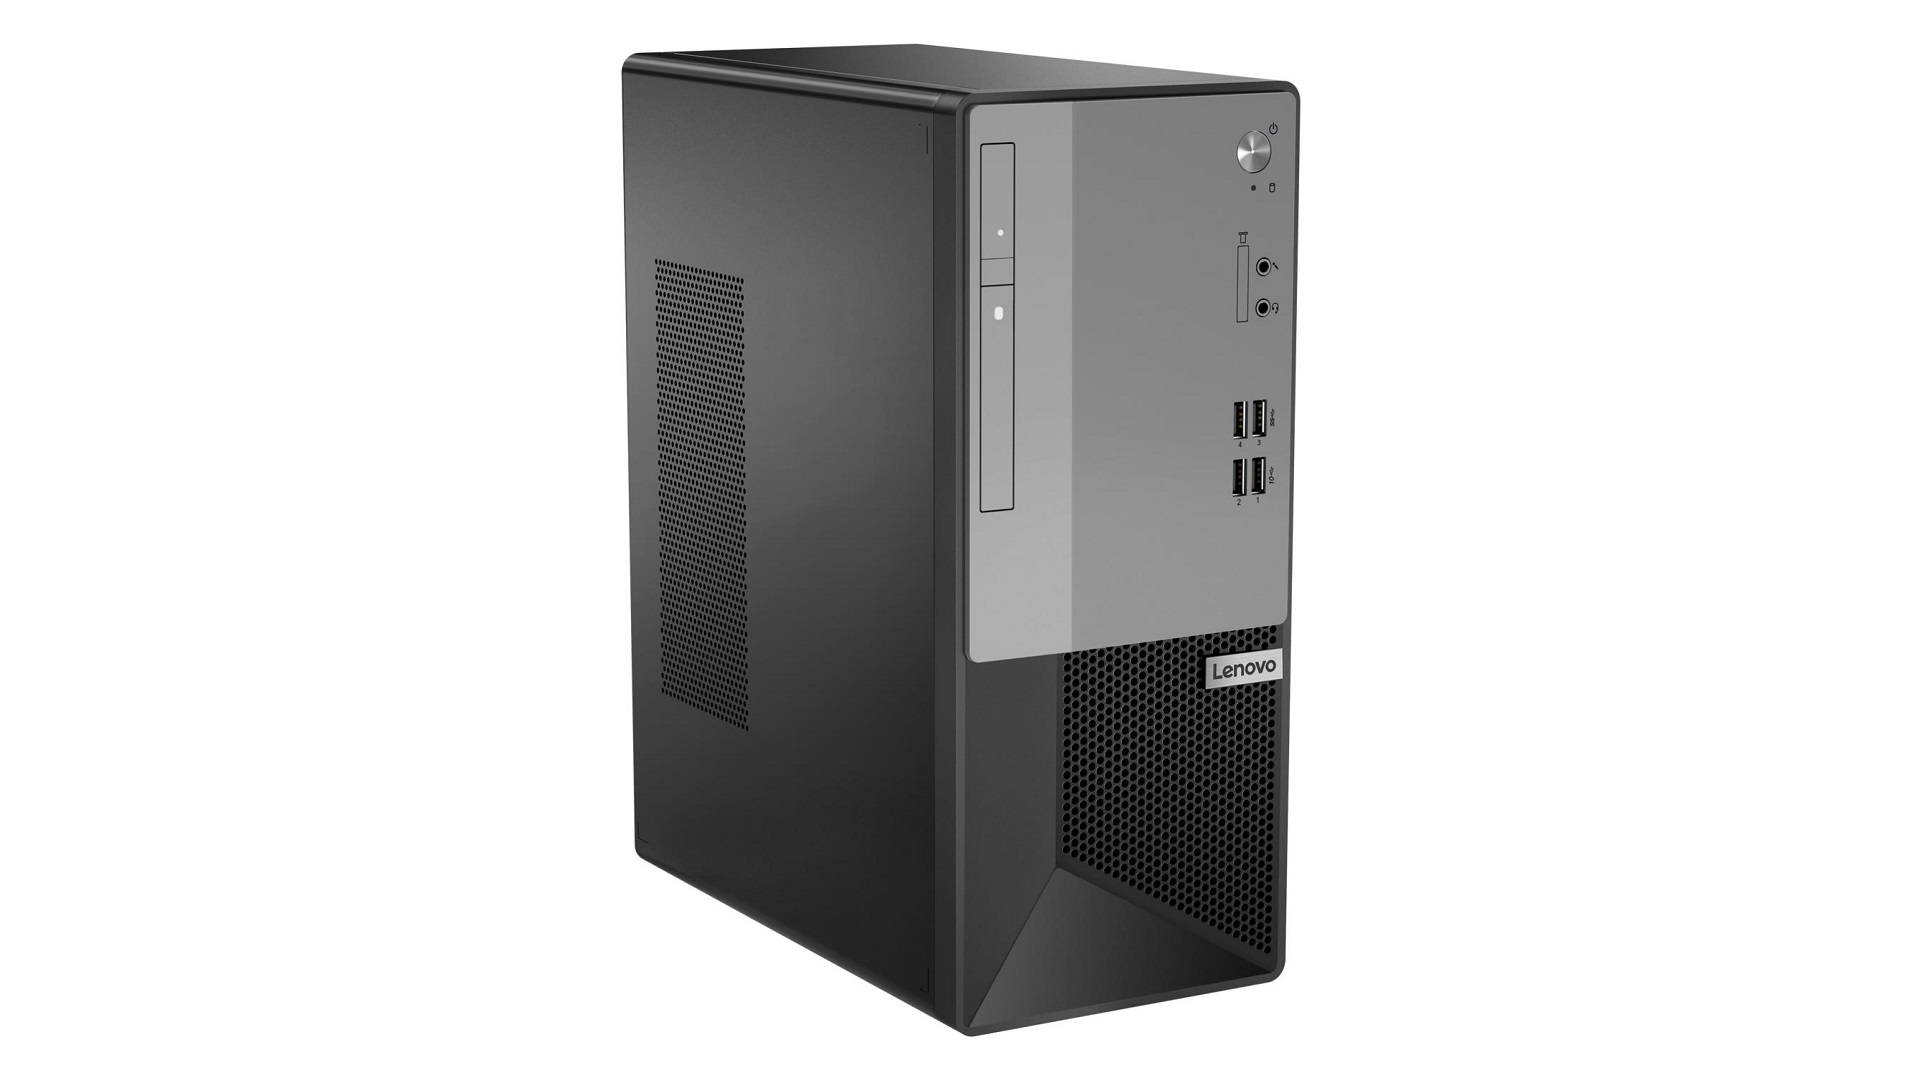 Recenzja Lenovo V55t 2. generacji. Kompaktowy komputer do pracy i multimediów